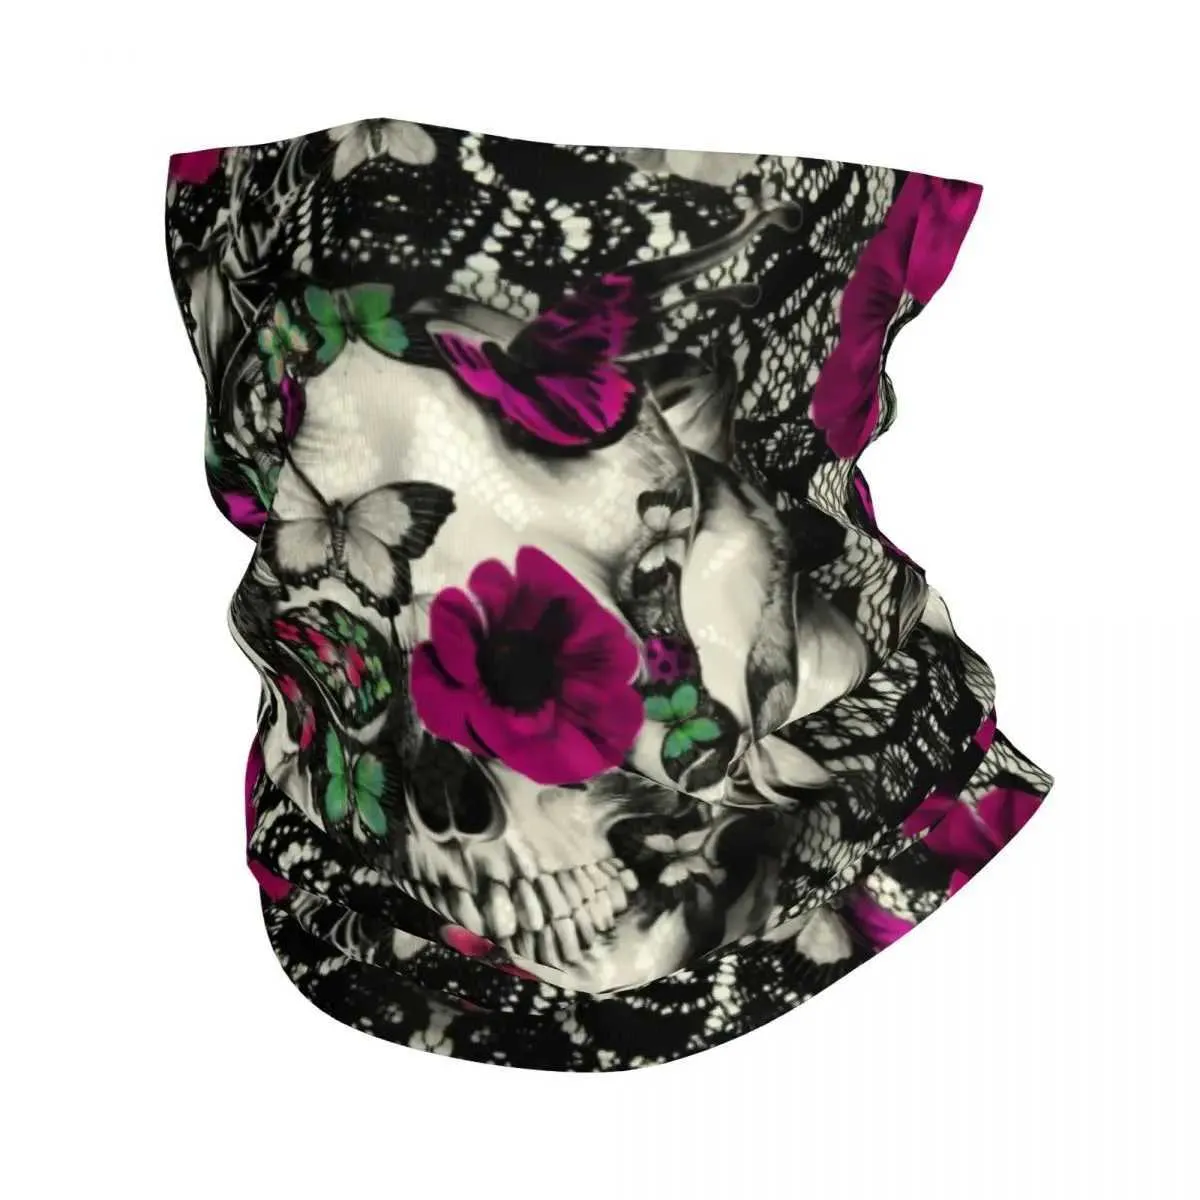 Fashion Face Masks Neck Gaiter Victorian Gothic Lace Skull Floral Bandana Couvre couche imprimé Balaclavas Face Masque Écharpe Chaussure chaude pêcheur Fishing Men A Y240425X889